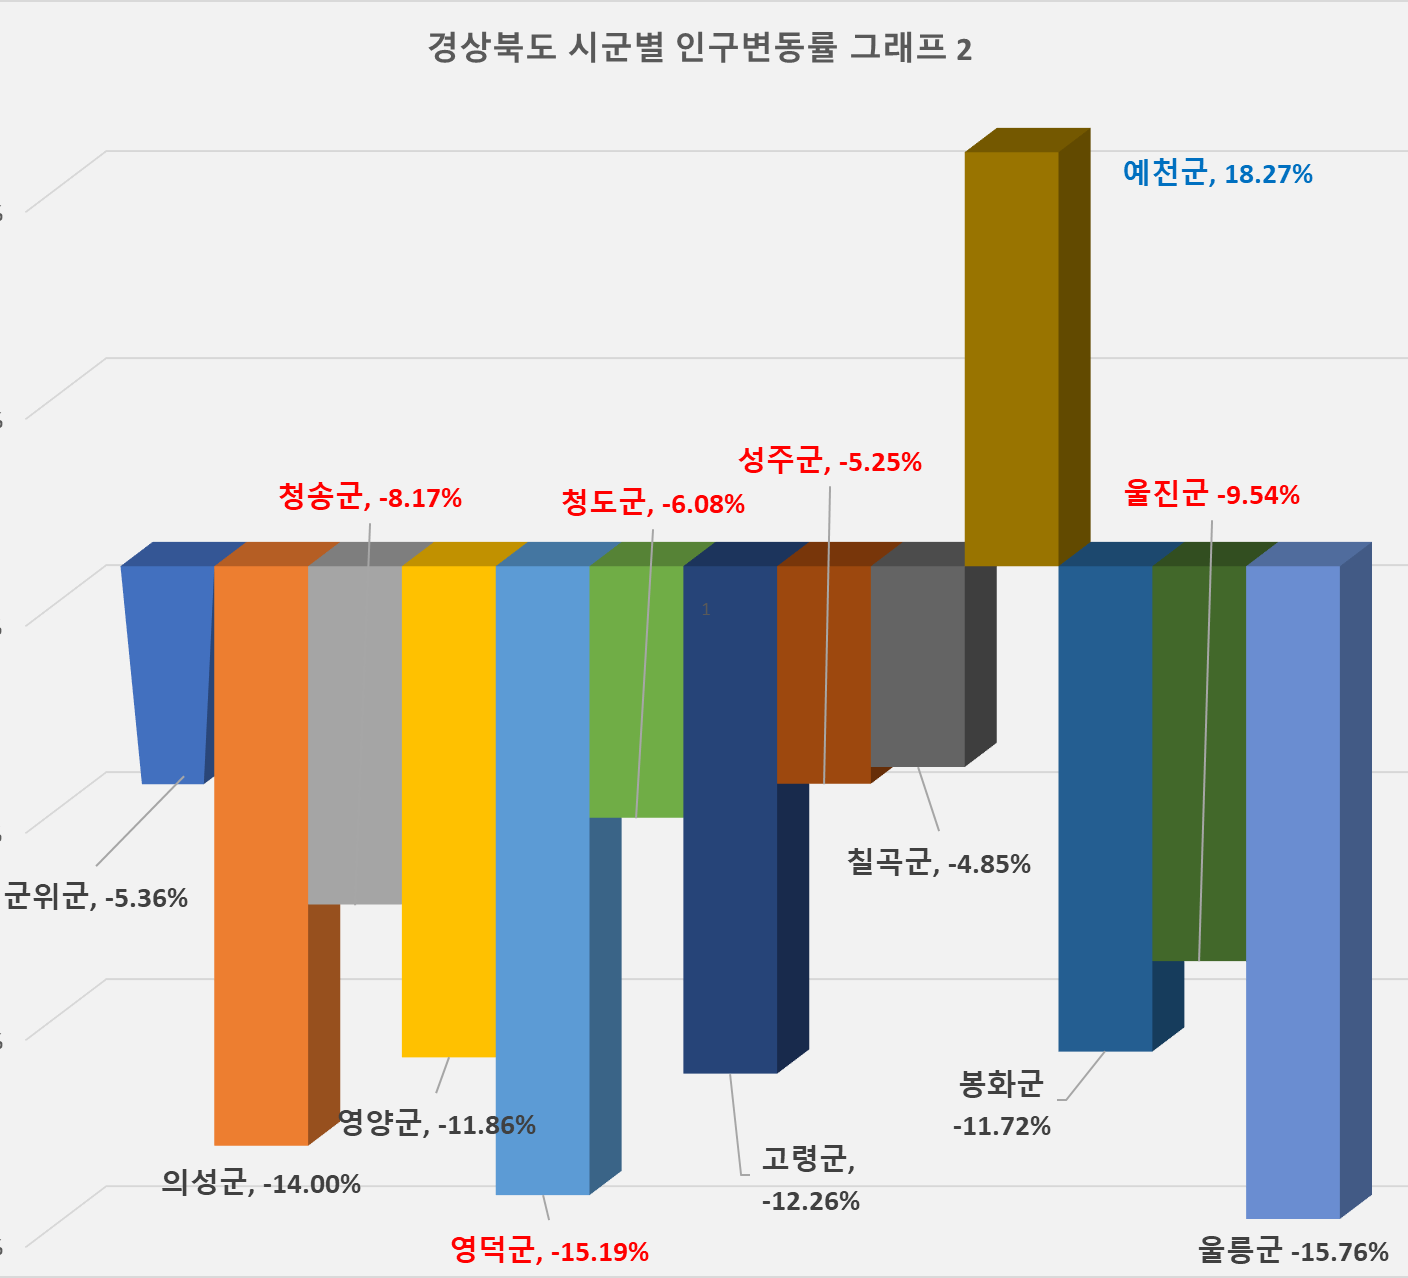 경상북도 시군별 인구수 증감률 그래프 2